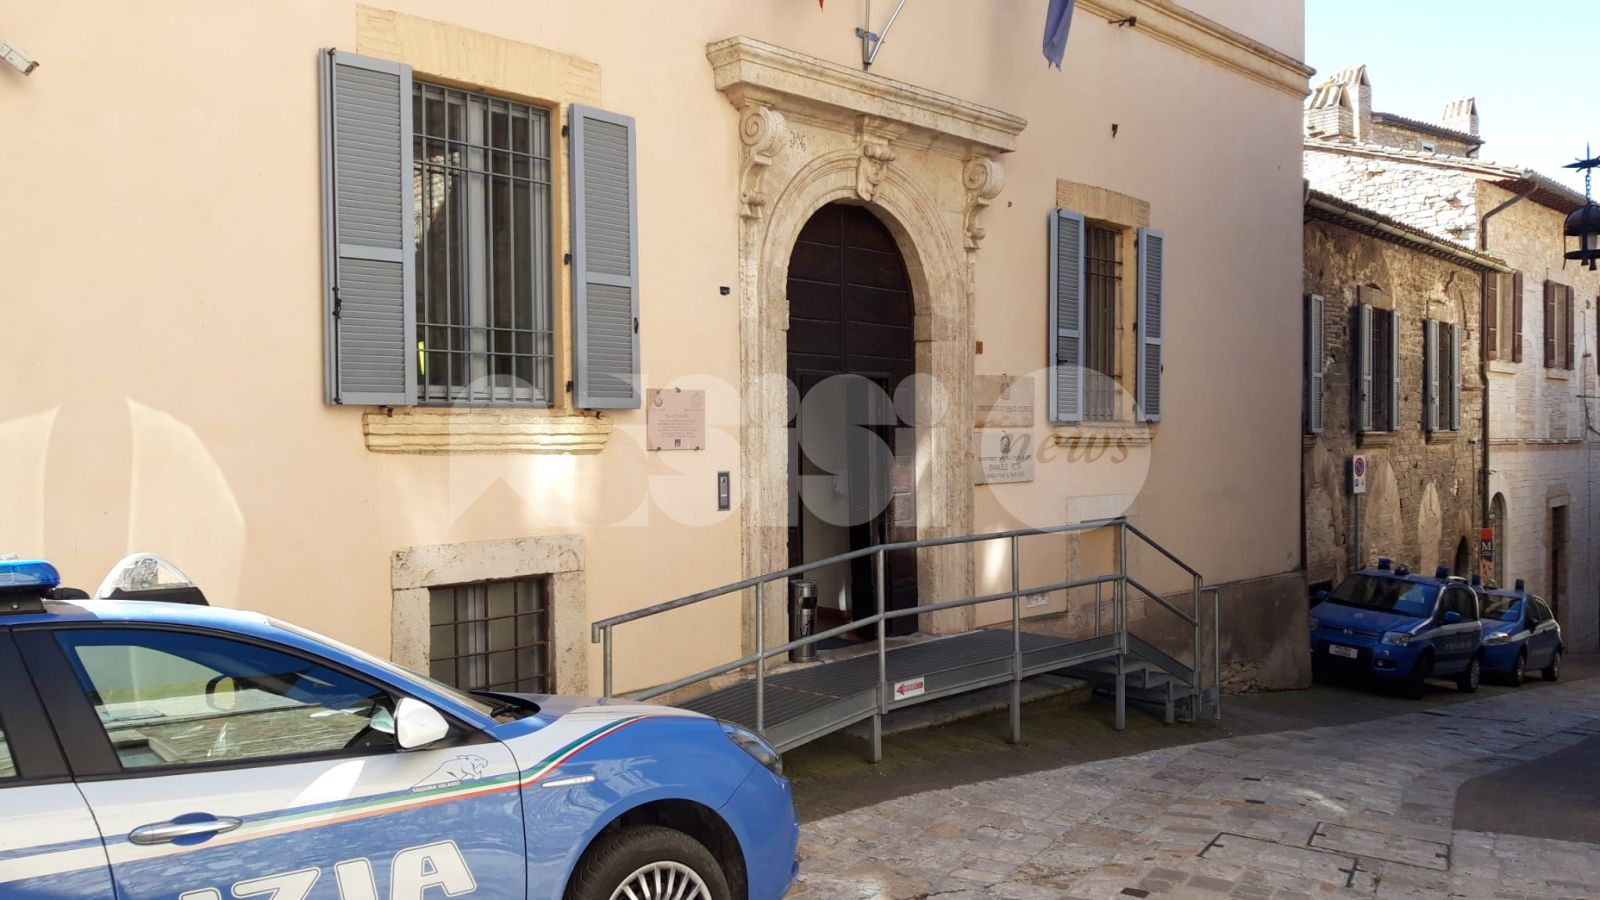 Insediamento abusivo, denunciate 10 persone a Bastia Umbra